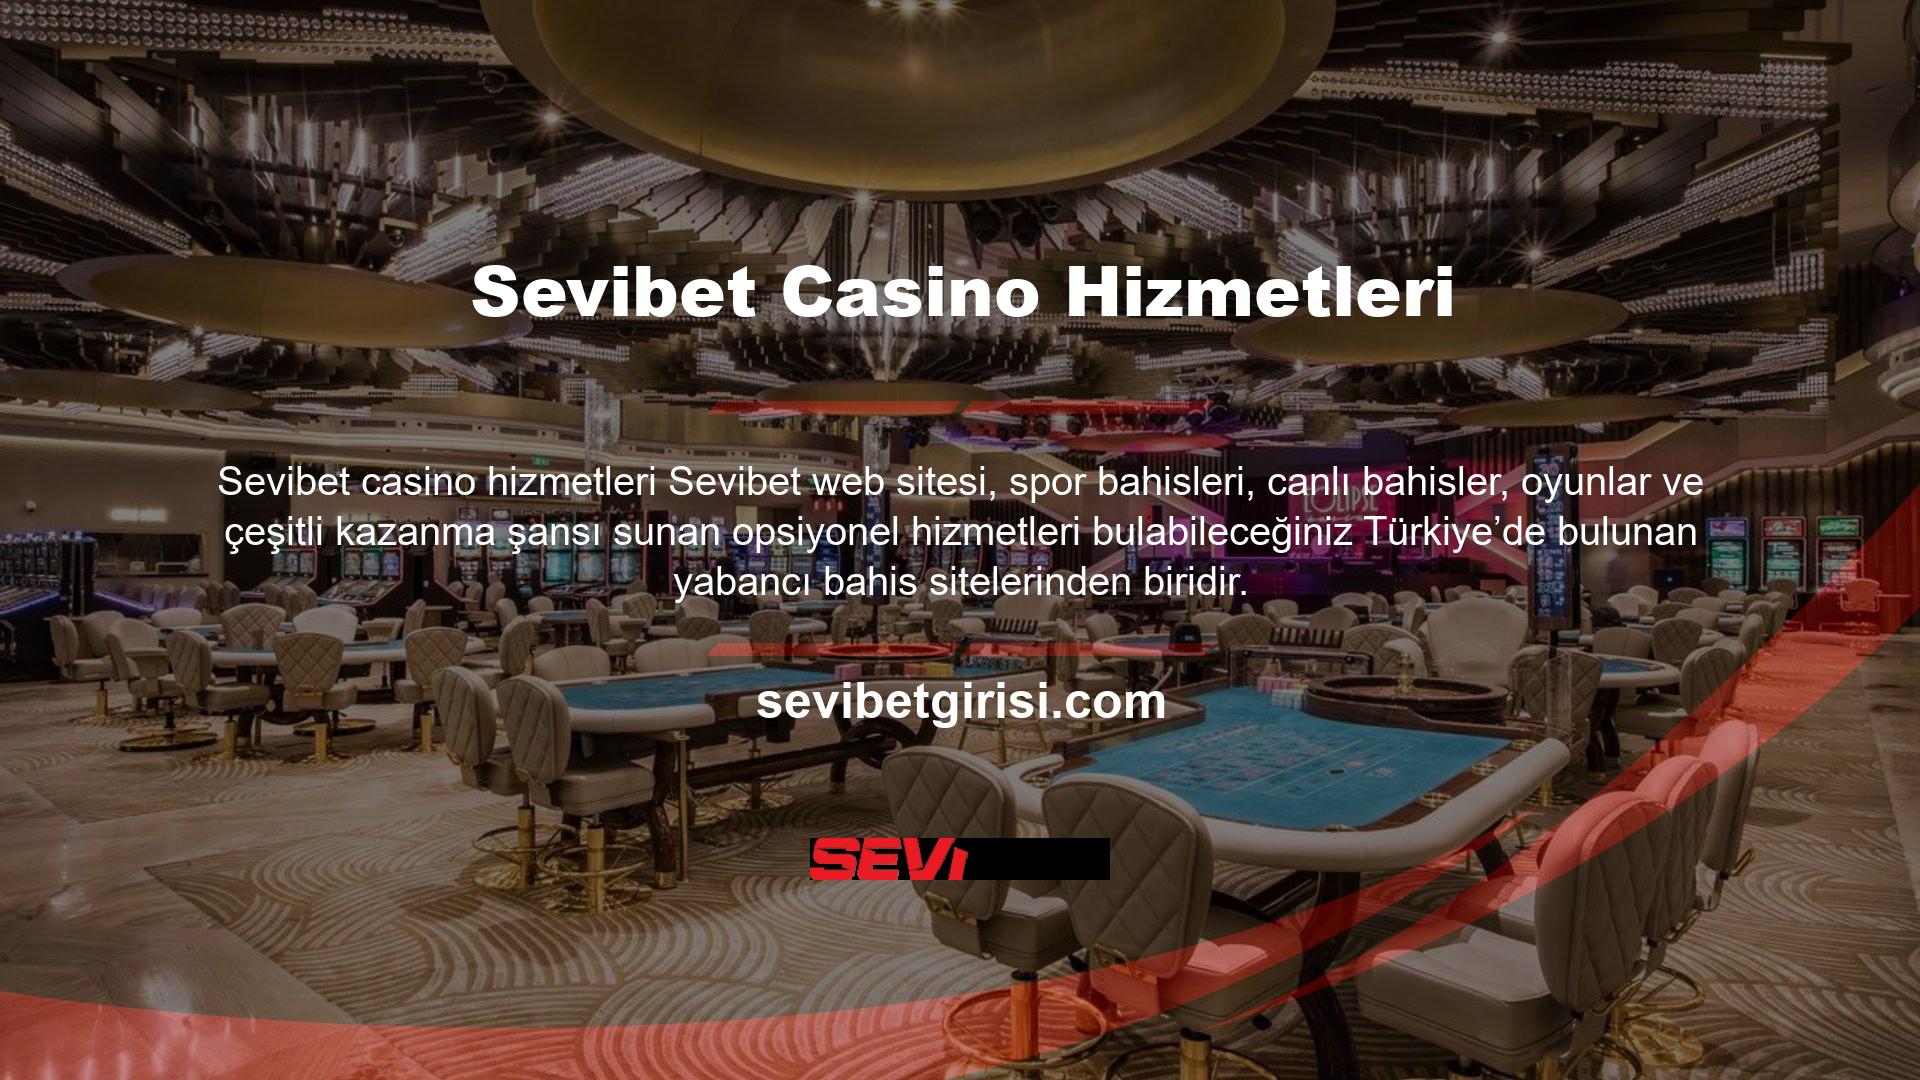 Aynı zamanda Türkiye pazarında da güvenilir bir yabancı casino sitesi olarak kendini göstermektedir